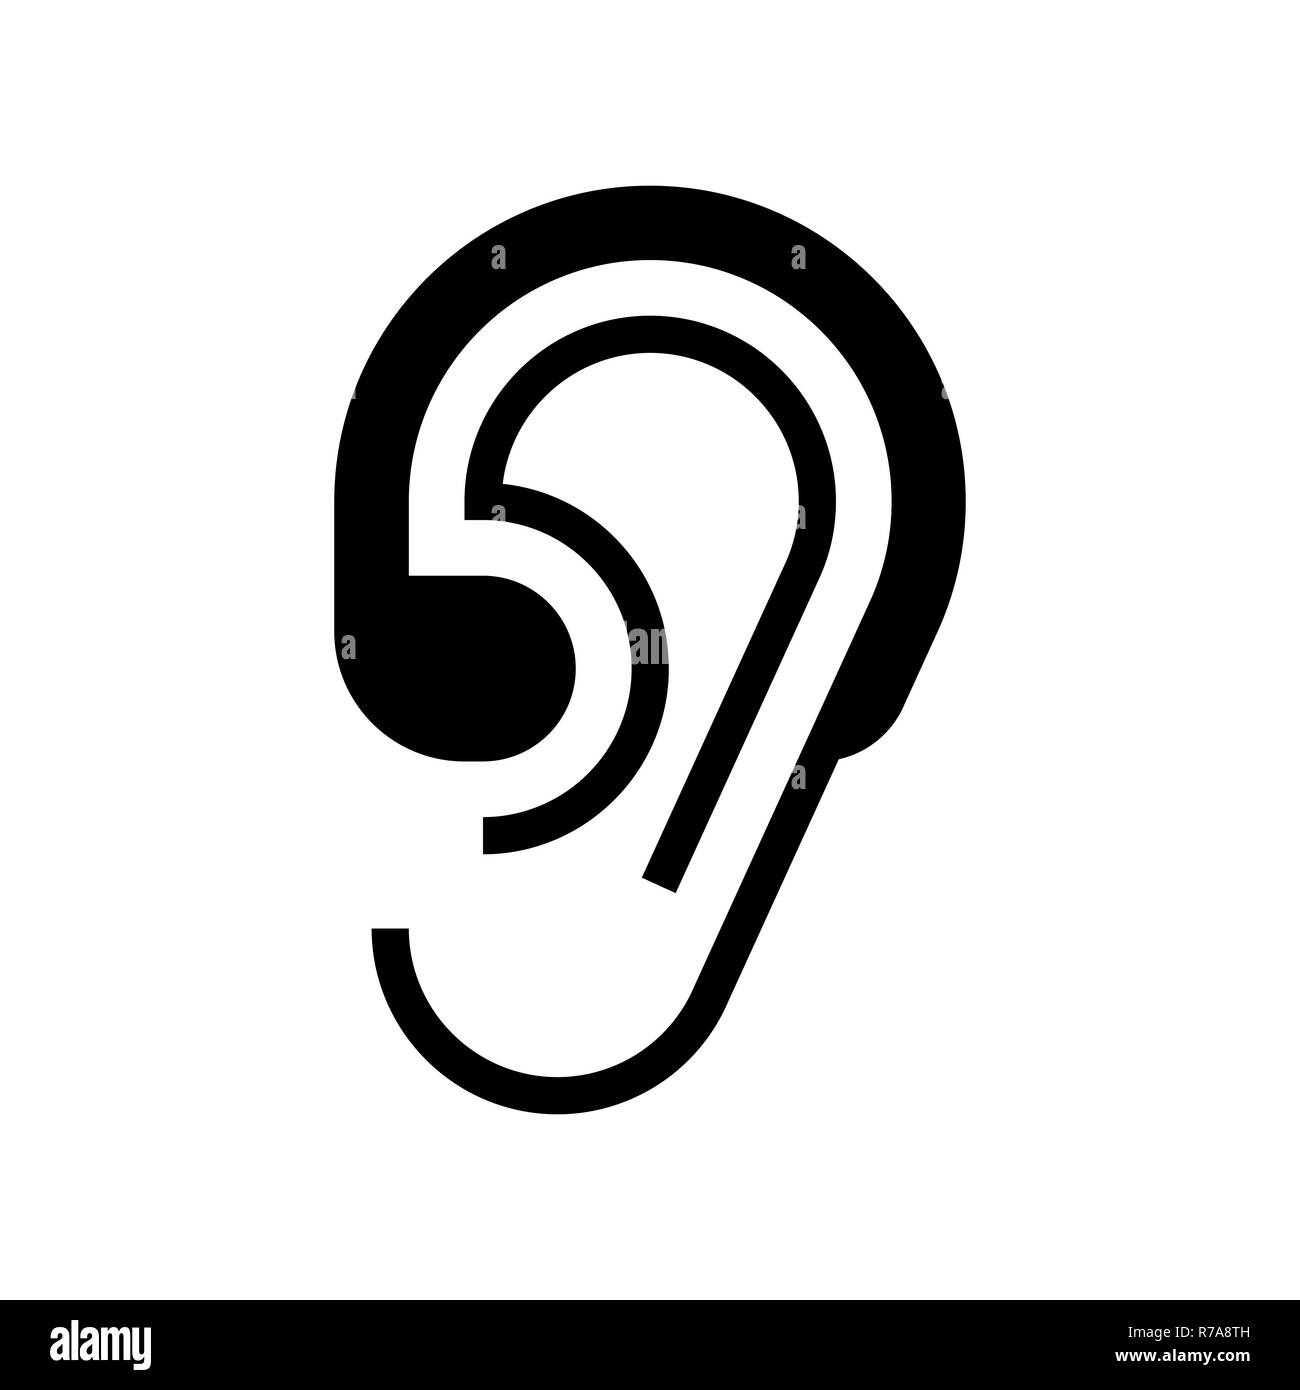 L'icône aide auditive isolé sur fond blanc Banque D'Images